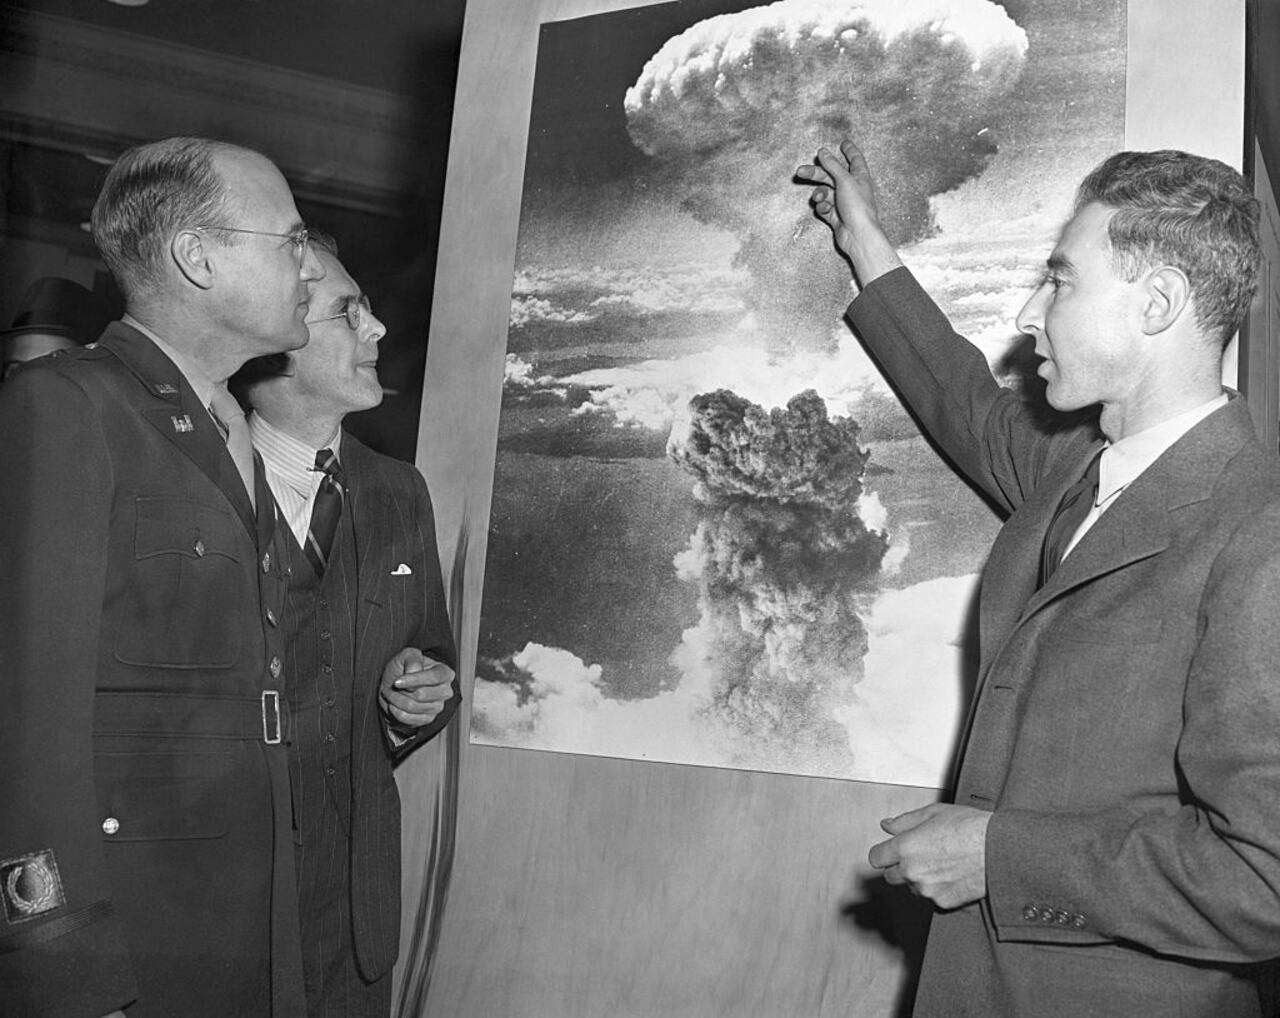 Tres de los hombres que desempeñaron papeles destacados en el desarrollo de la bomba atómica visitan la exposición atómica de la Sociedad Química Estadounidense en el Grand Central Palace. Mirando una foto de la explosión atómica sobre Nagasaki, Japón, de izquierda a derecha, Brig. Gen. K. D. Nichols, Prof. H.D. Smythe, quien escribió el informe atómico del gobierno y J.R. Oppenheimer, director del laboratorio atómico de Los Alamos, Nuevo México.